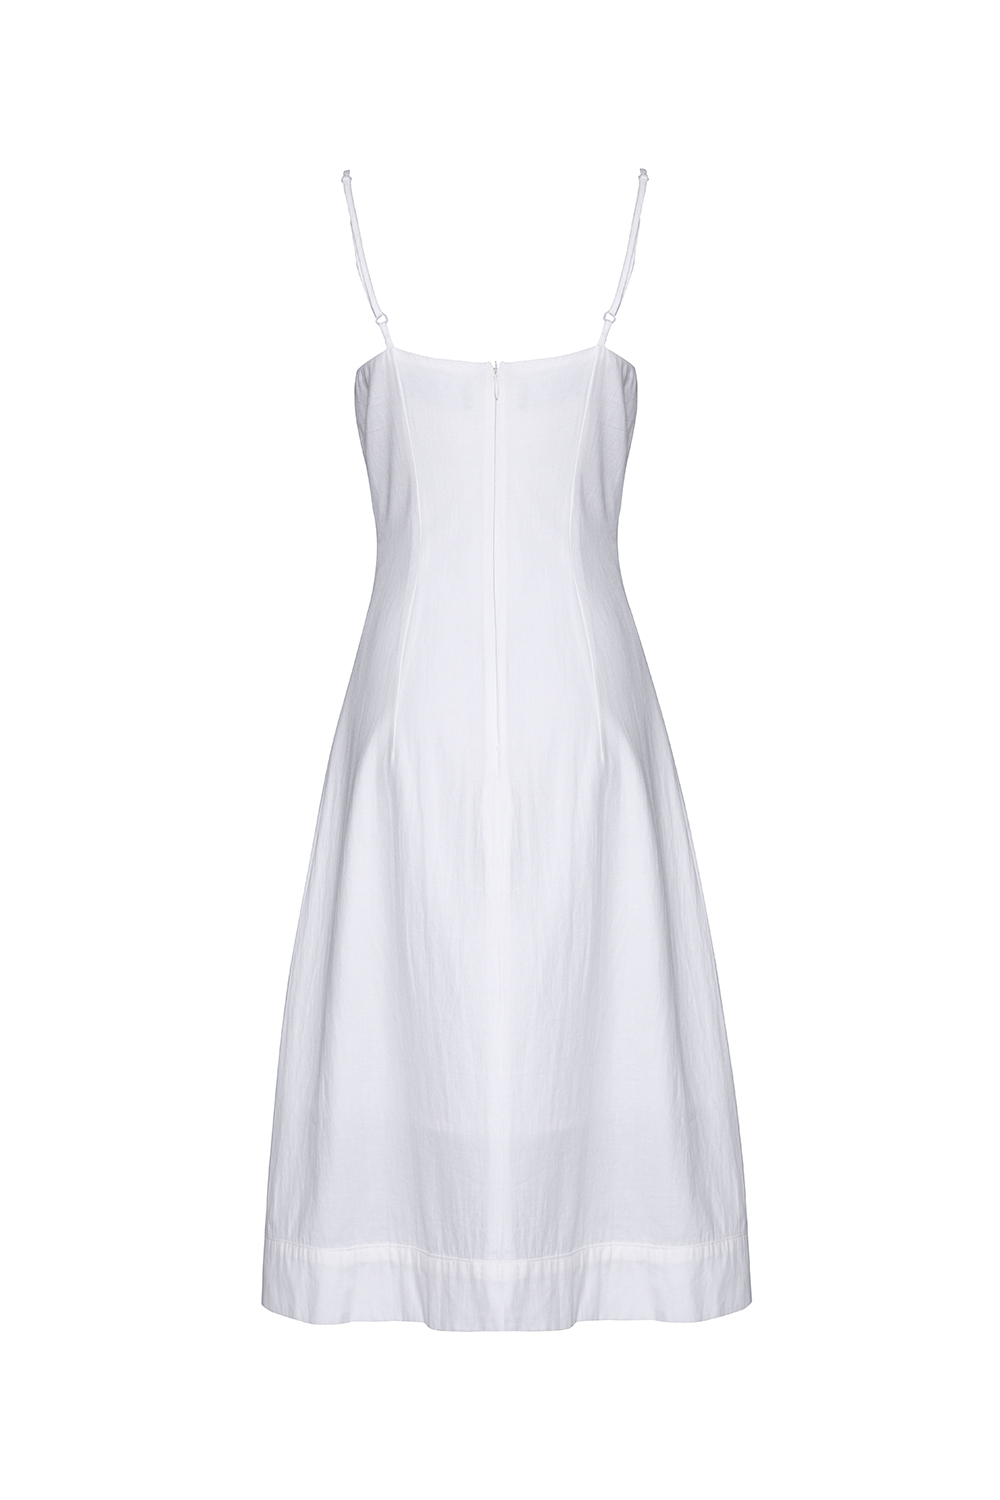 Đầm trắng hai dây đính nút phối nơ HL16-35 | Thời trang công sở ...